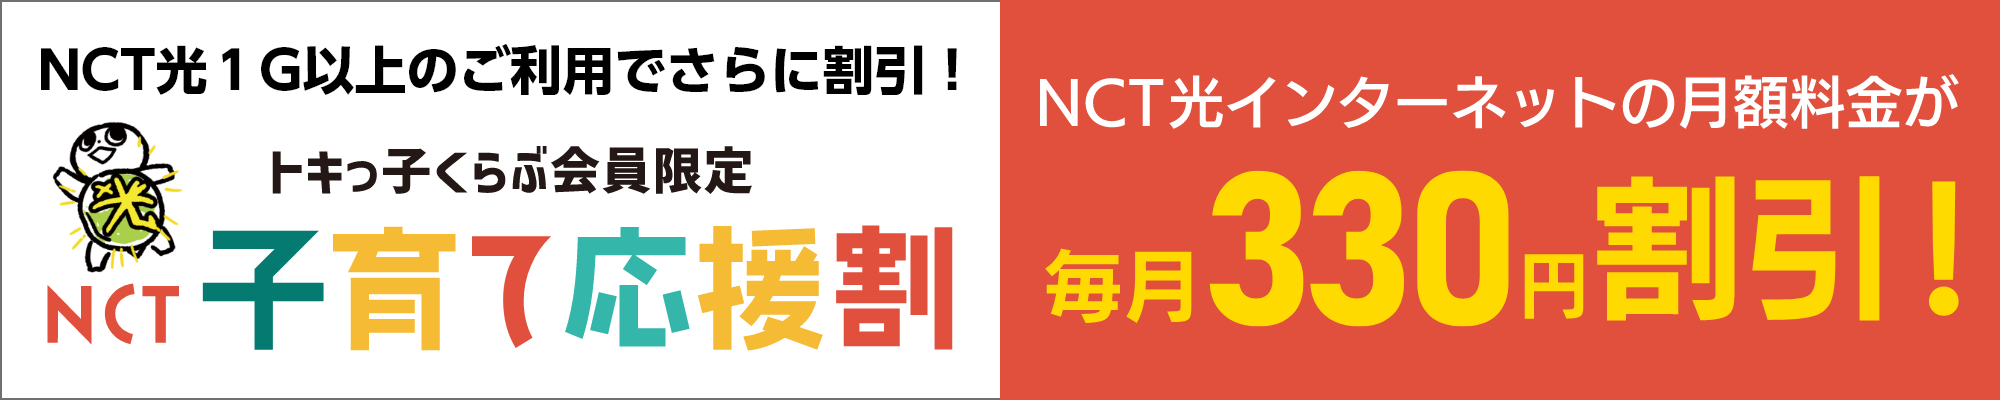 NCT光１G以上のご利用でさらに割引！トキっ子くらぶ会員限定NCT子育て応援割 NCT光インターネットの月額料金が毎月330円割引！